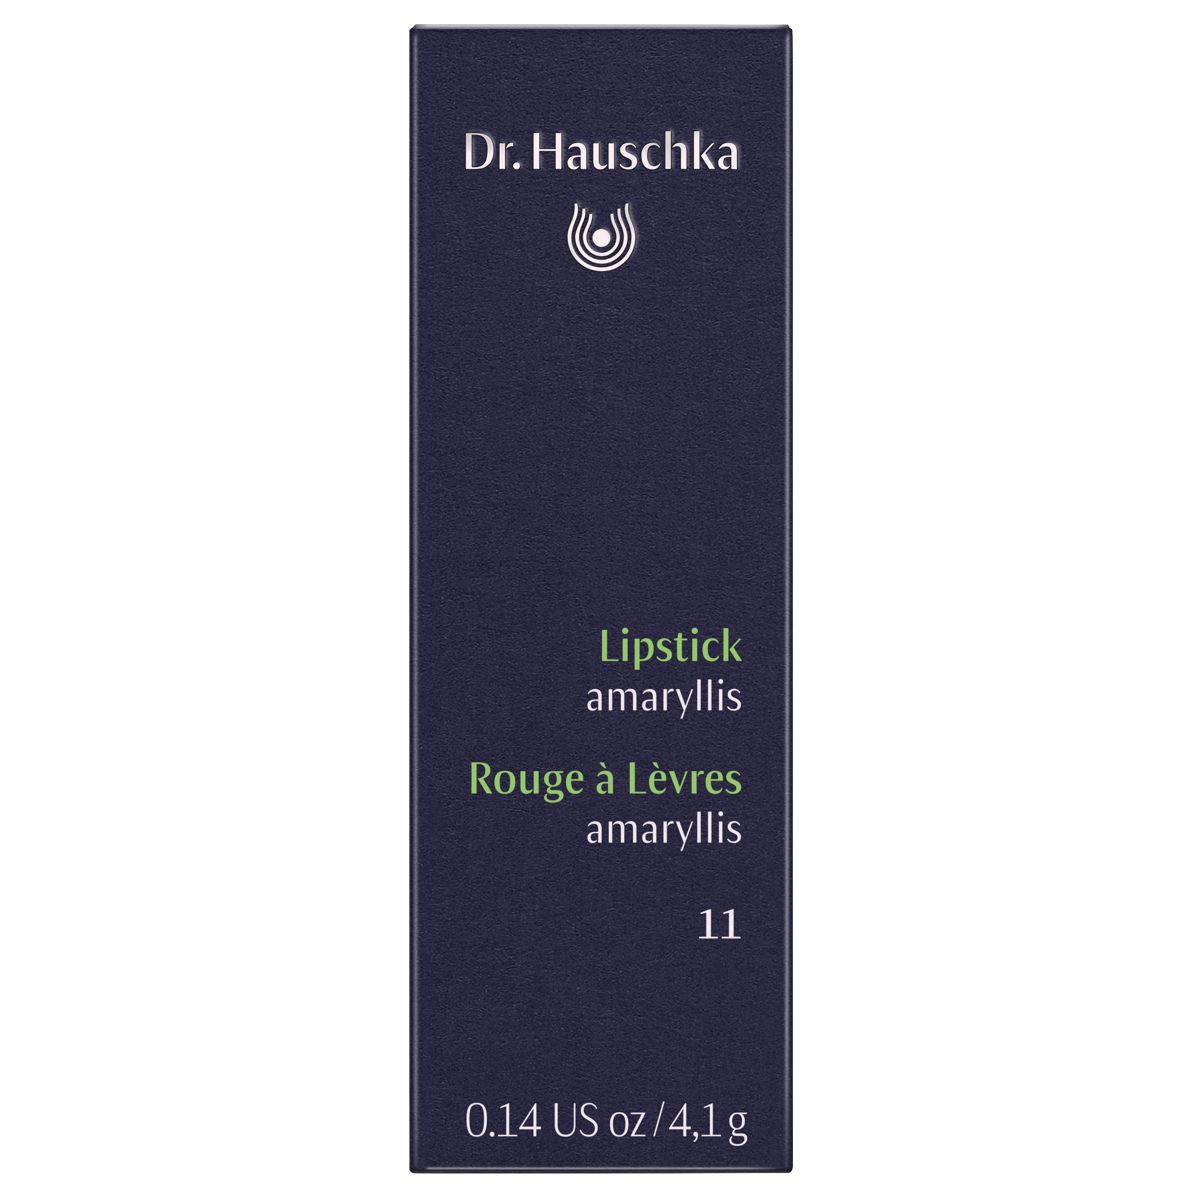 Dr_Hauschka_Lipstick_11_amaryllis_online_kaufen